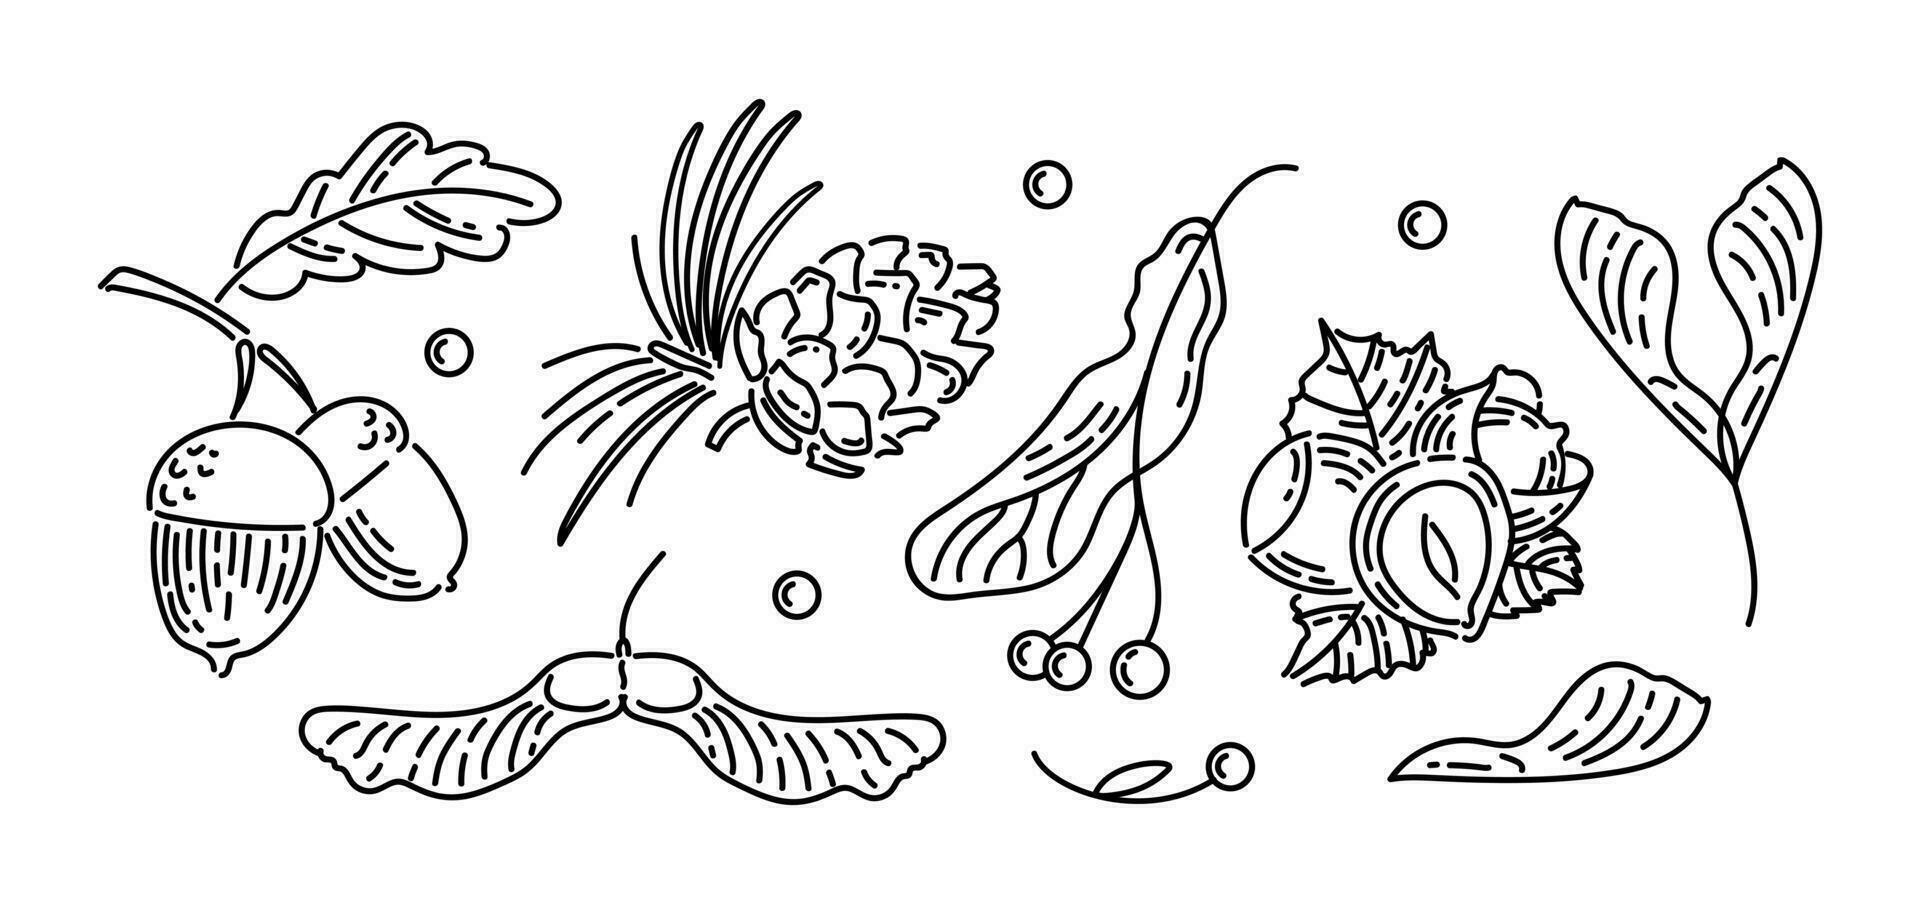 reeks van wijnoogst pictogrammen van herfst noten en zaden. eikels met bladeren, ceder ijshoorntje, linde zaden, hazelnoten, esdoorn- koraalduivel zaden. tekening stijl. voor stickers, web ontwerp, ansichtkaarten. vector